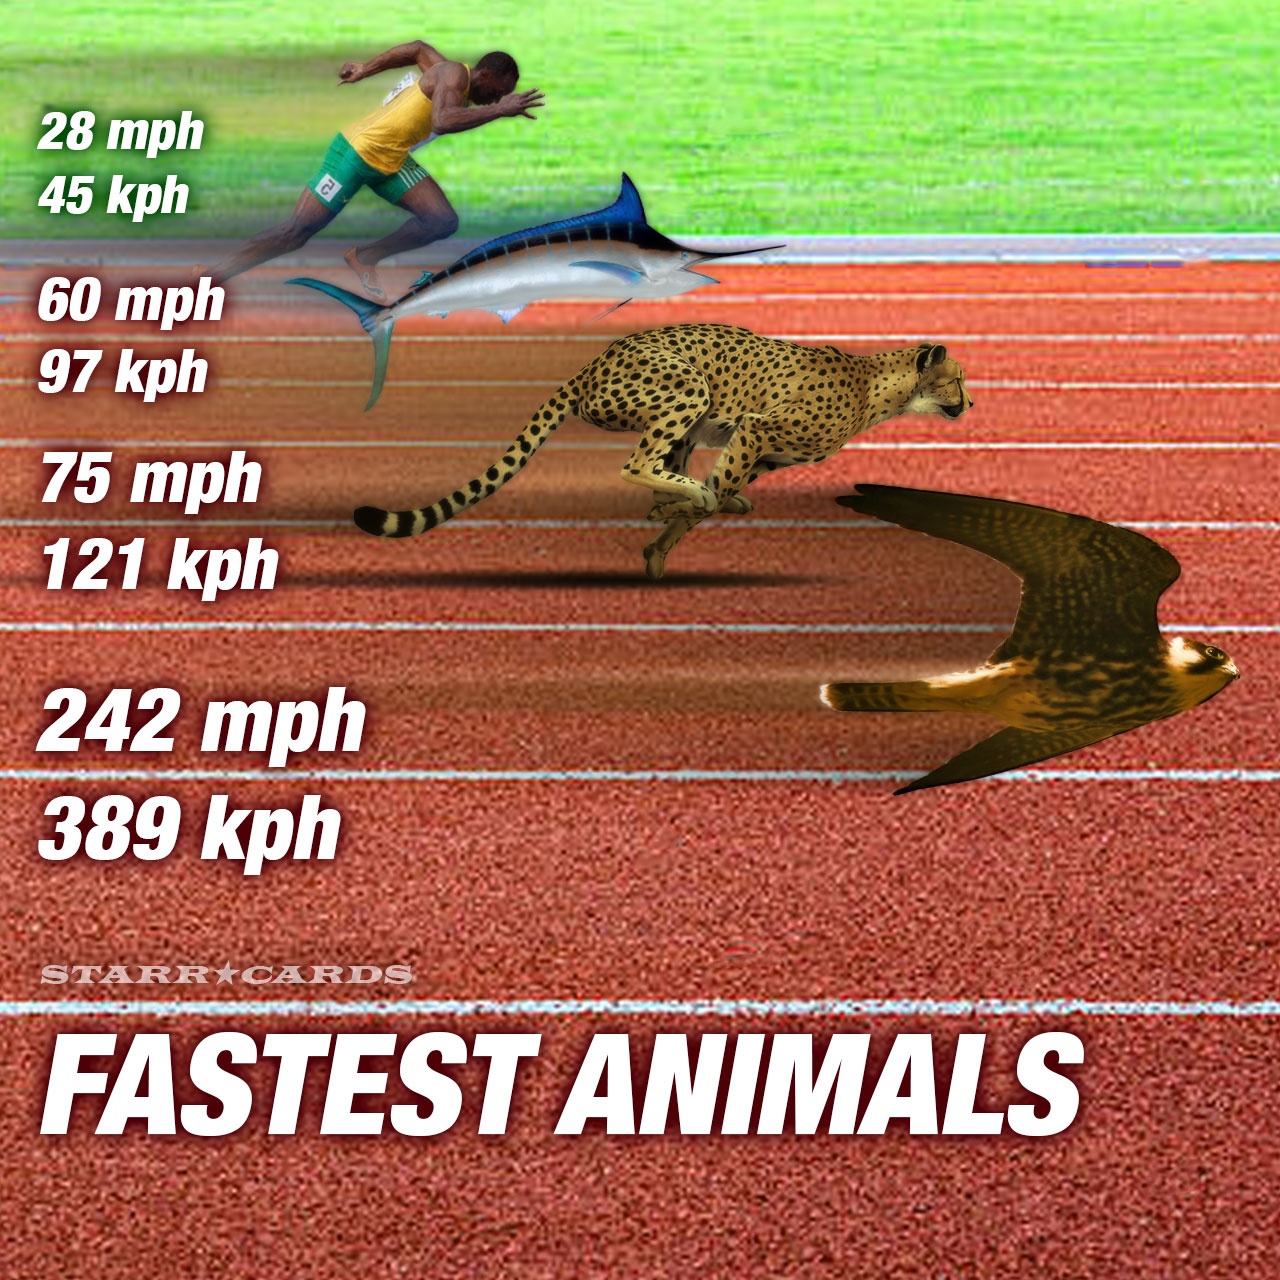 What bird is faster than a cheetah?